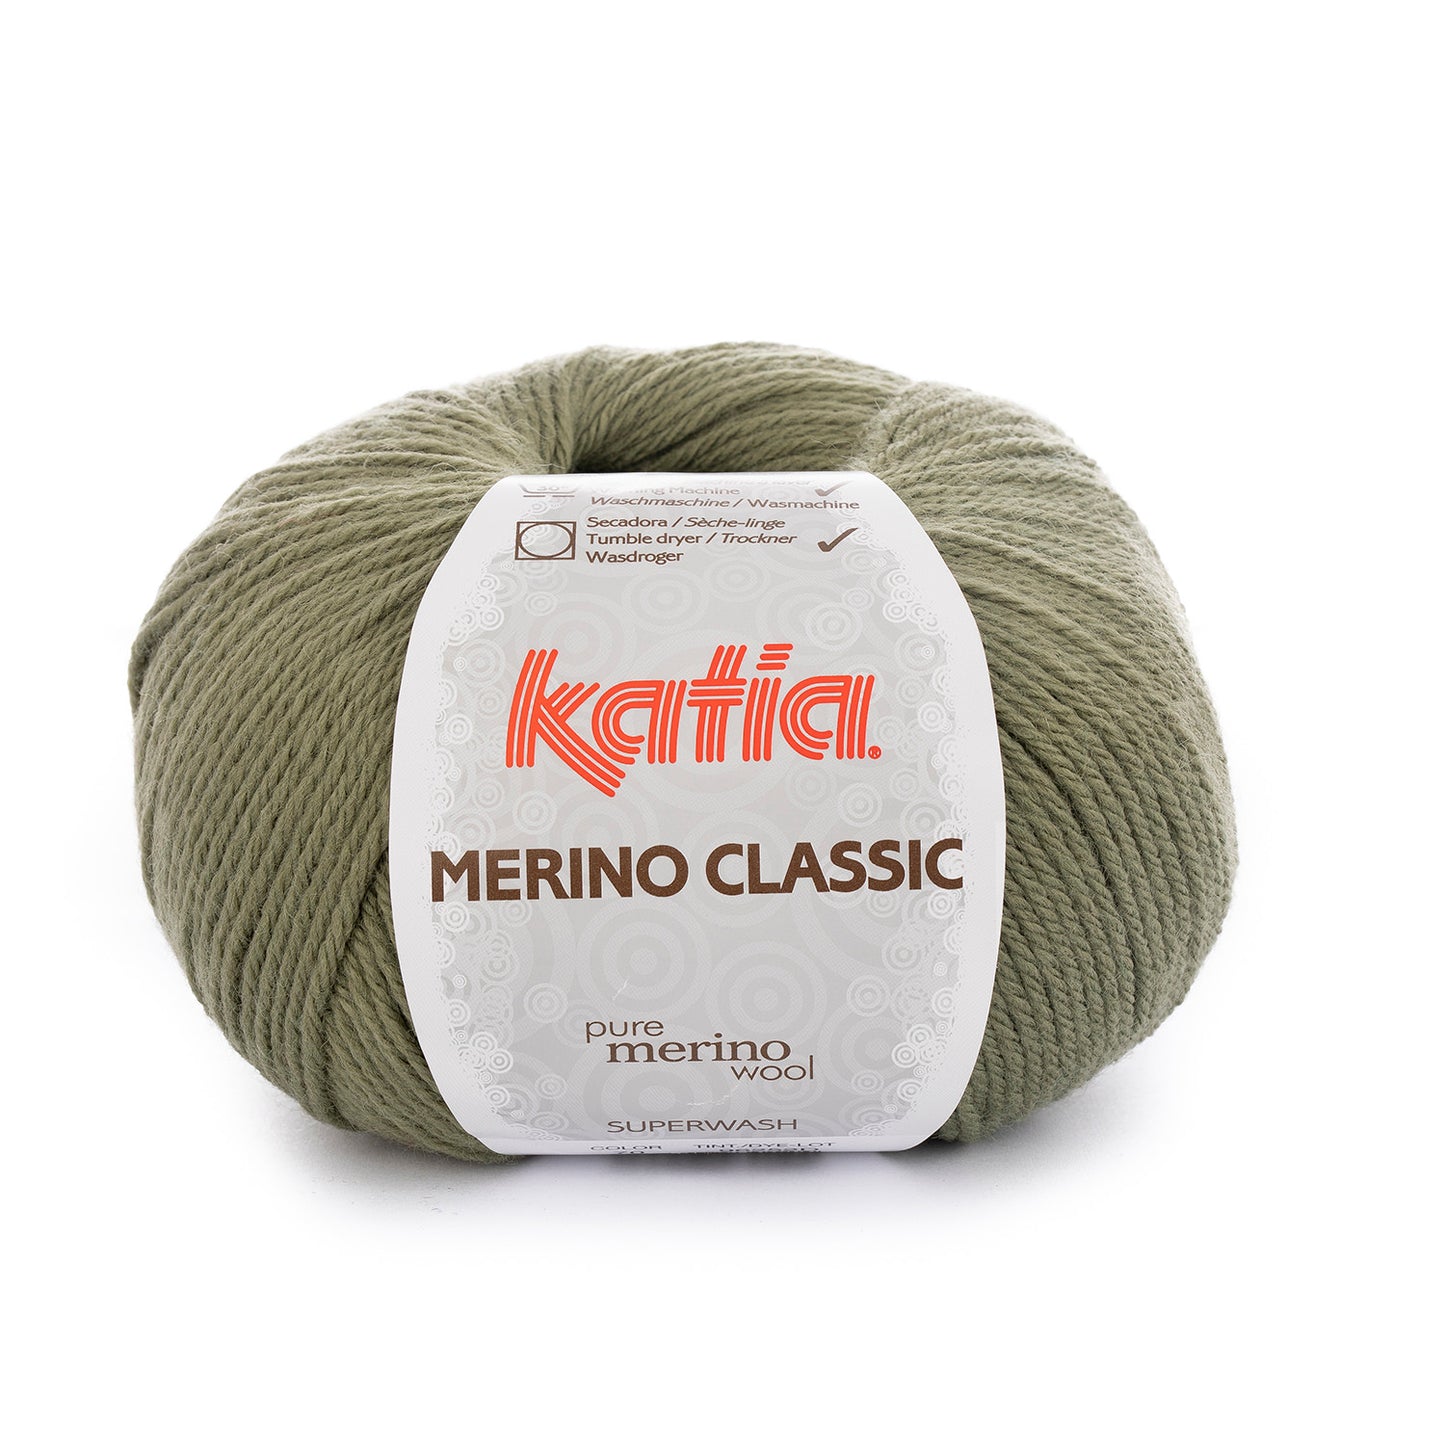 Merino classic color 70